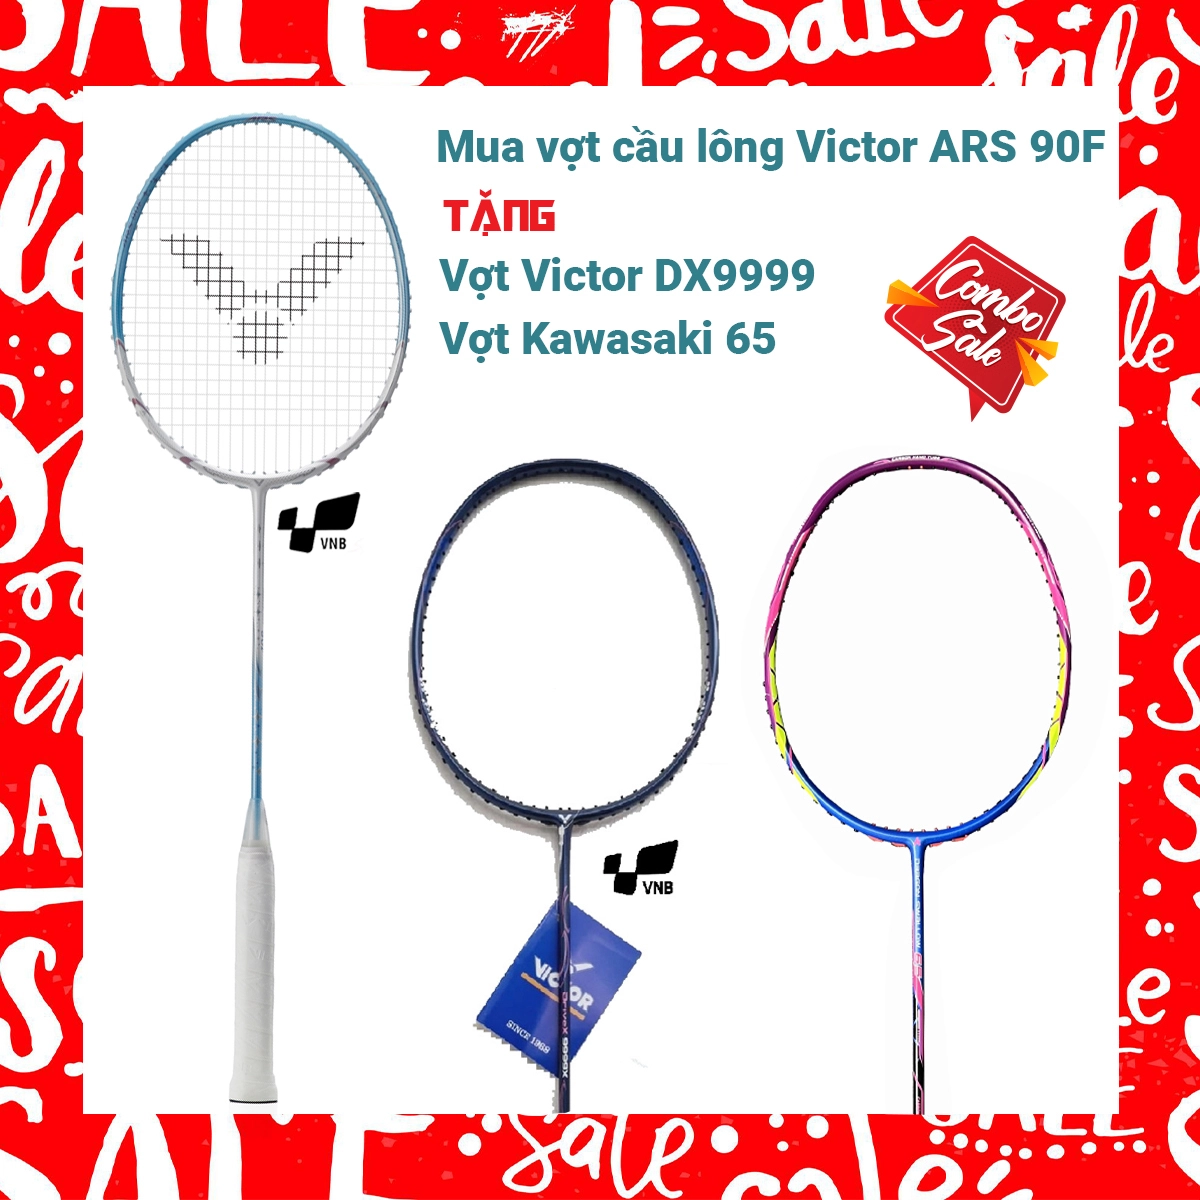 Combo mua vợt cầu lông Victor ARS 90F tặng vợt Victor DX7777 + vợt Kawasaki 65